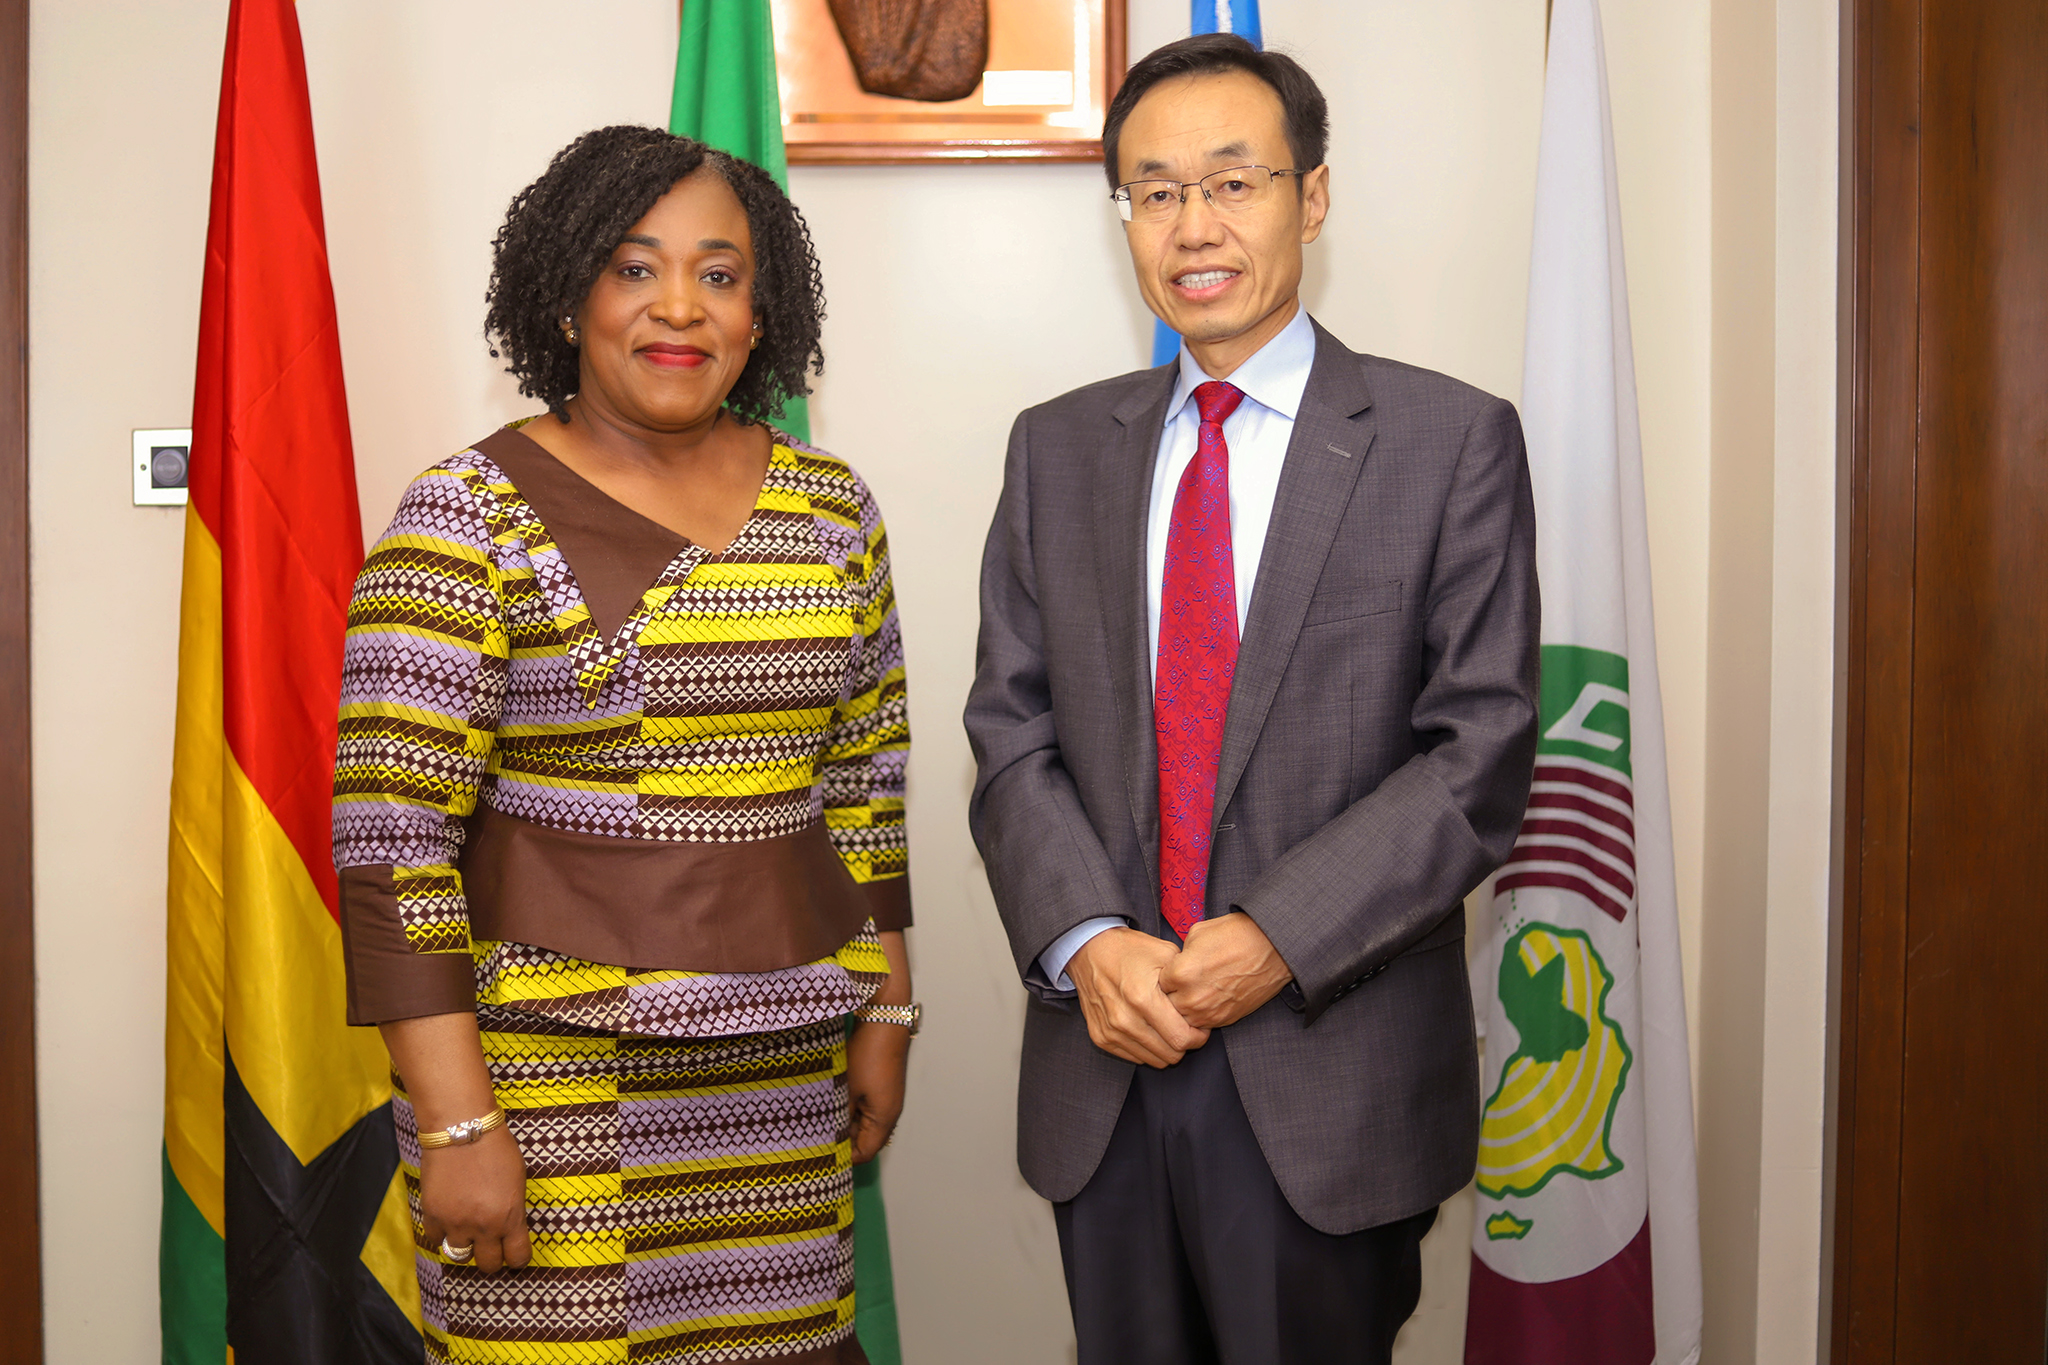 Ambassador of China to Ghana, Mr. Shi Ting Wang and Ghana's Foreign Minister, Shirley
Ayorkor Botchwey.